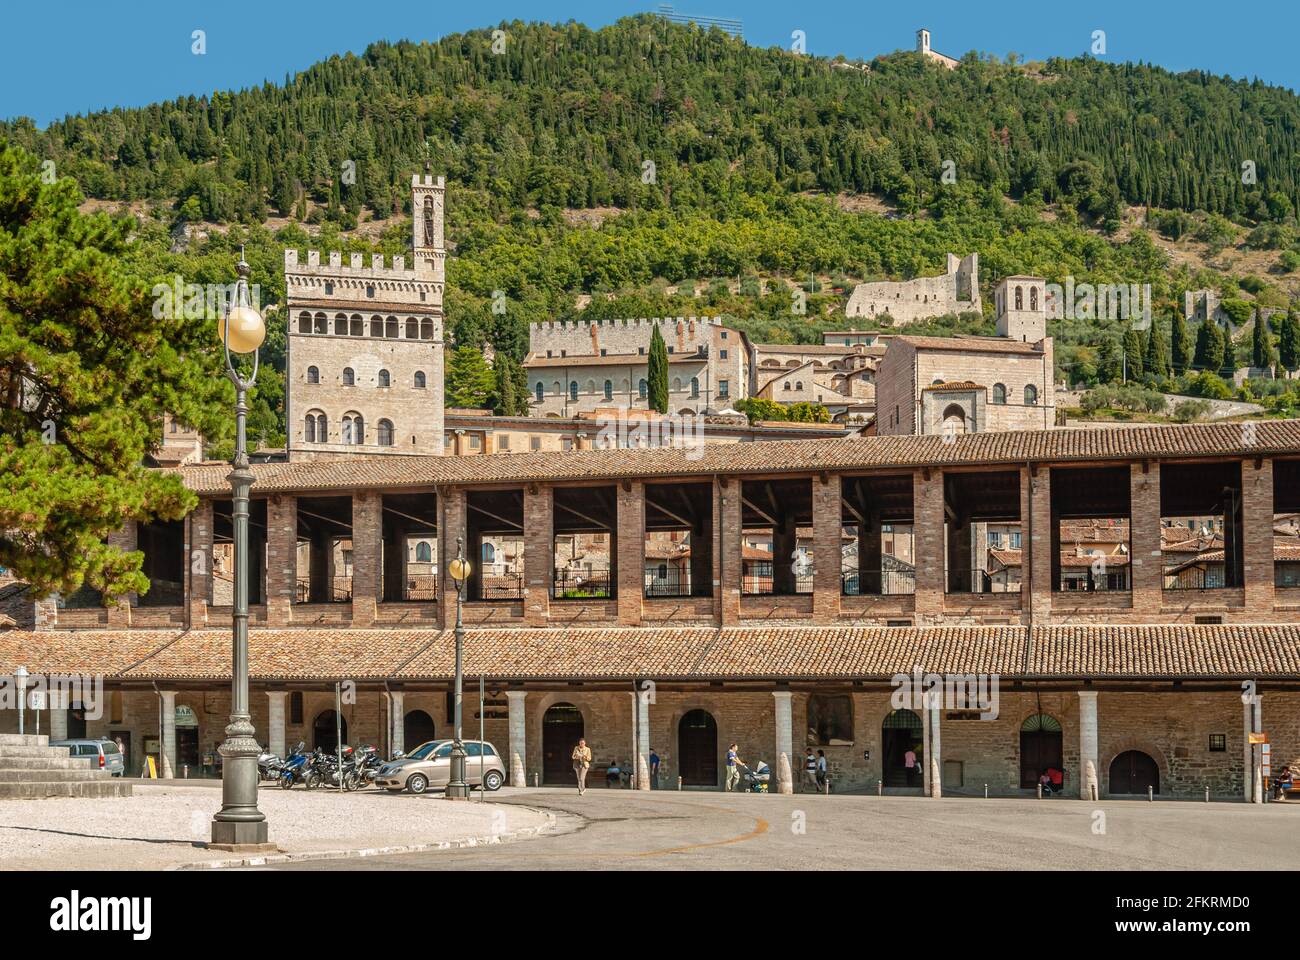 Loggia dei Tiratori in the old town of Gubbio, Umbria, Italy Stock Photo